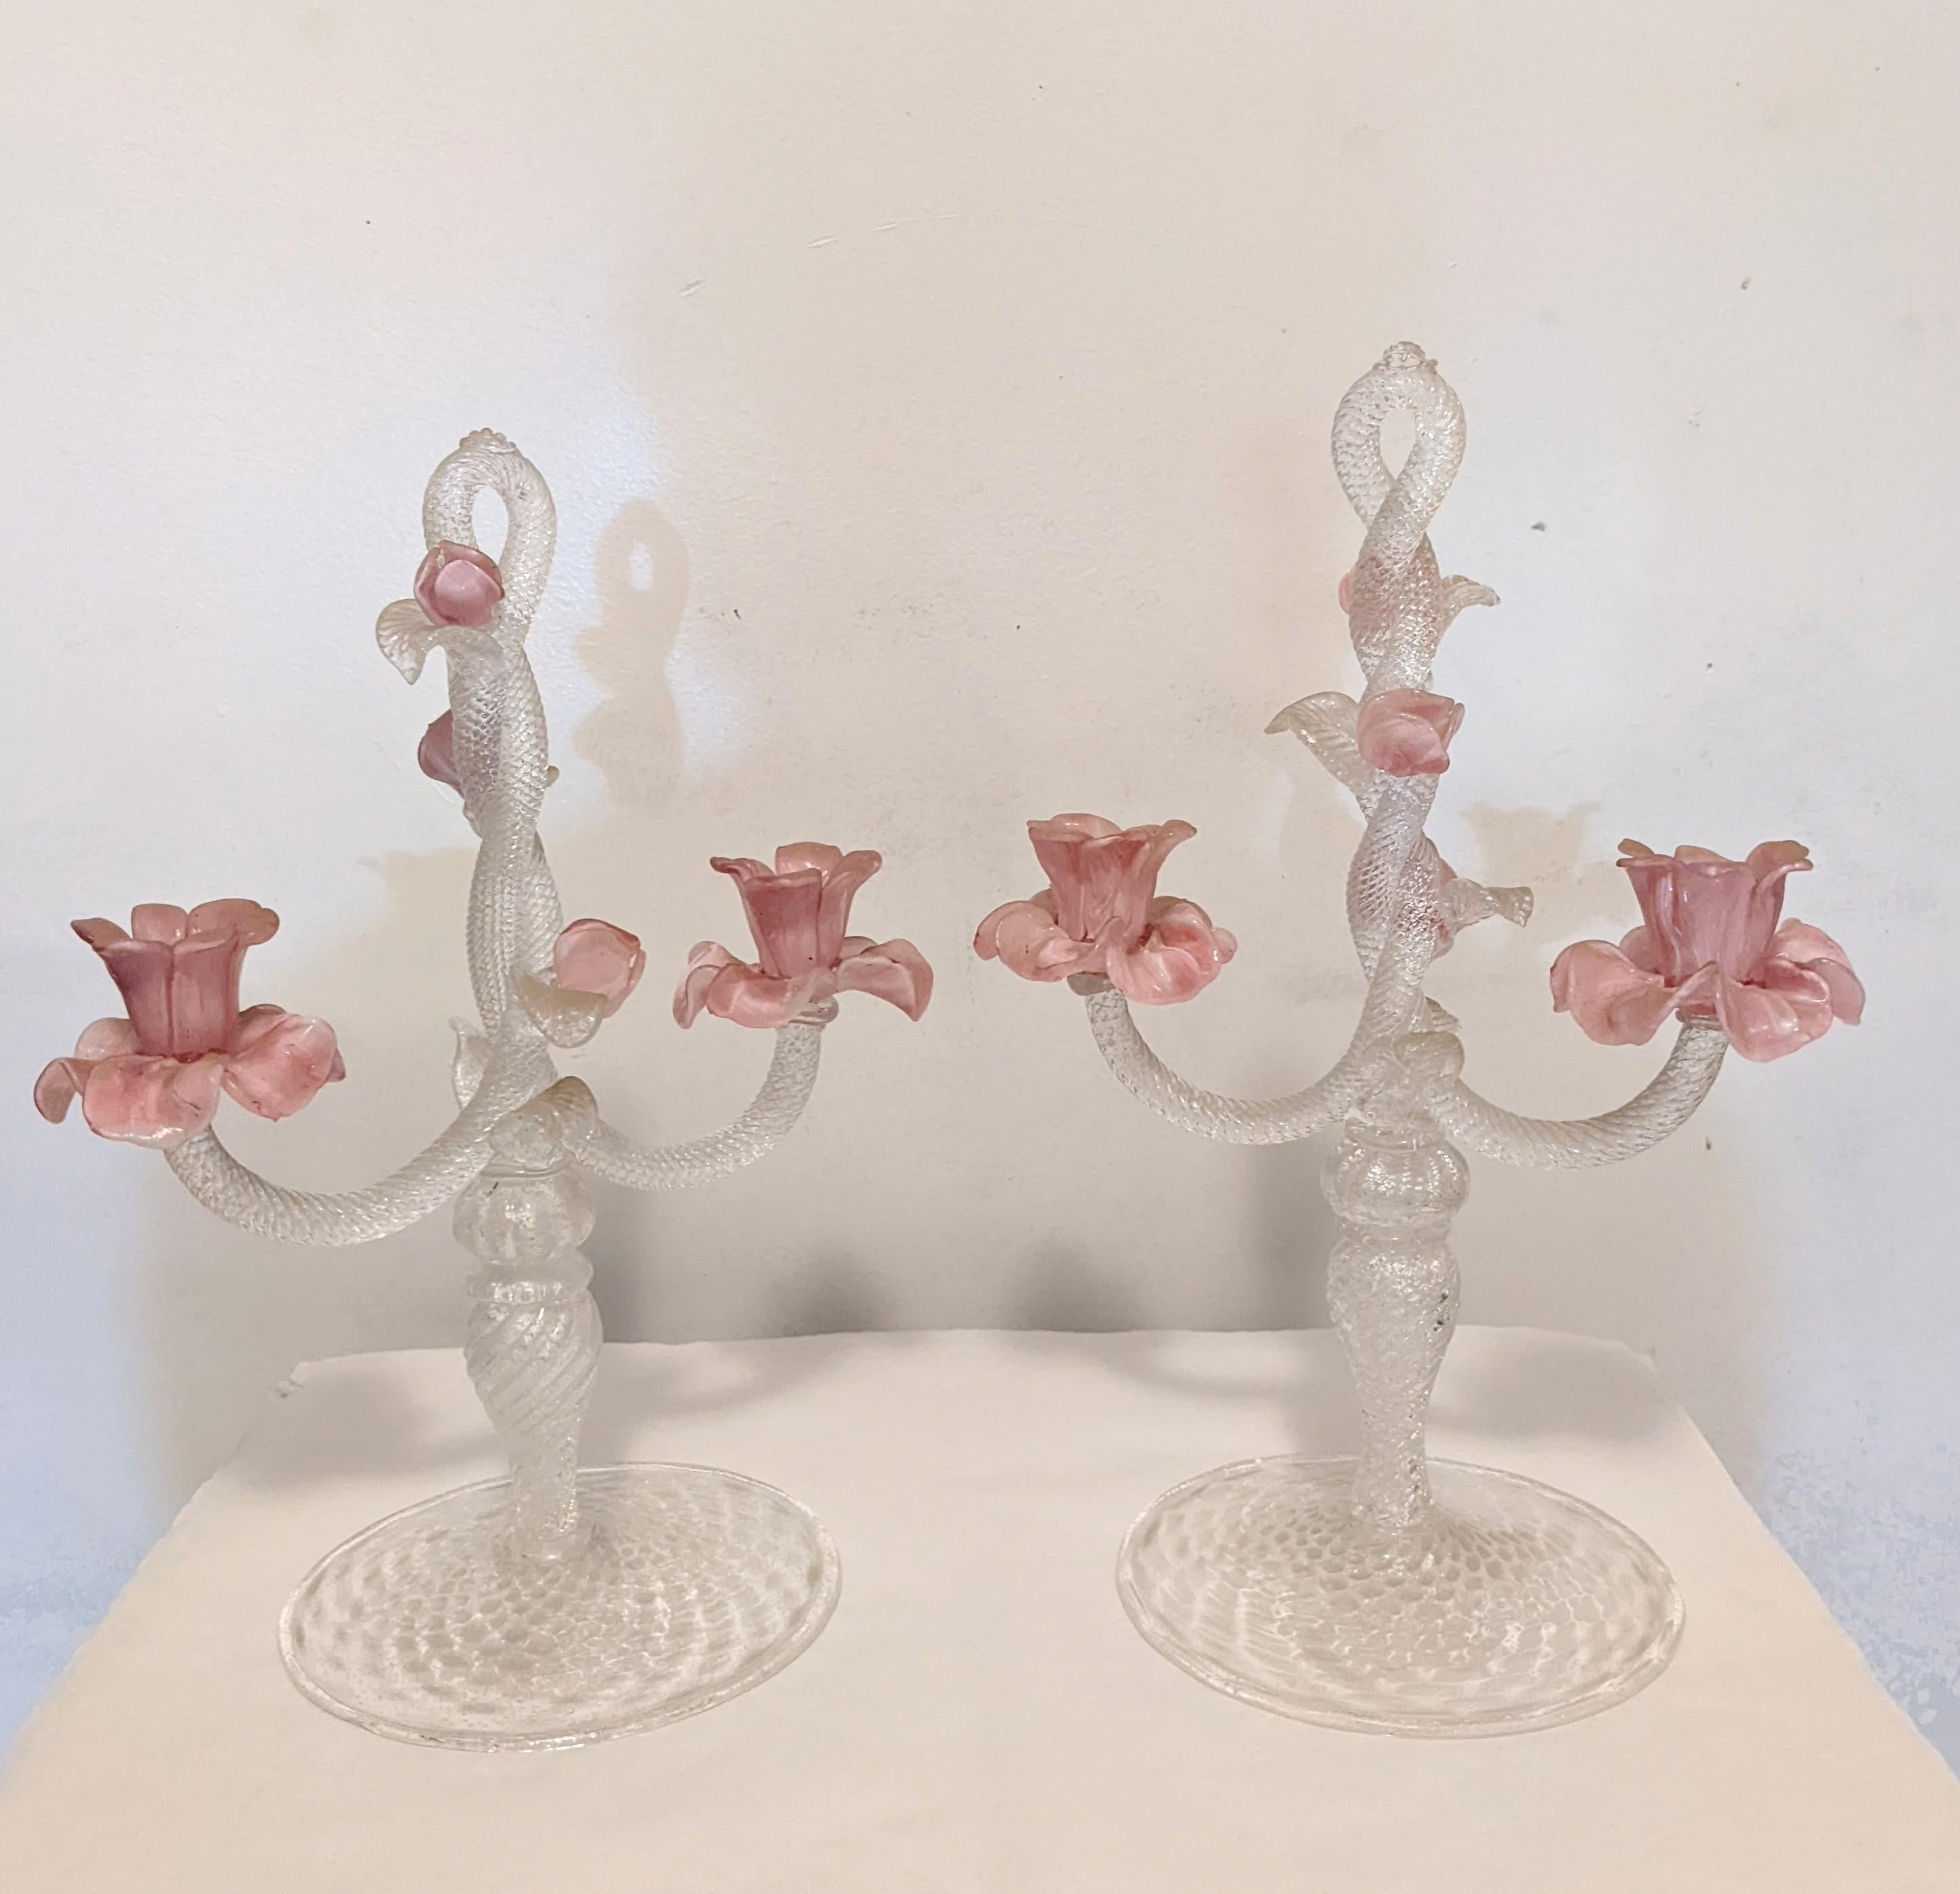 Wunderschönes Paar großer, antiker, mundgeblasener Muranoglas-Kerzenhalter mit wunderschönen Wirbeln aus silbernen Flecken und rosafarbenen Opal-Rosenknospen. Wunderschön gestaltet mit gedrehten Säulen, Blättern und Knospen mit Platz für 2 Kerzen